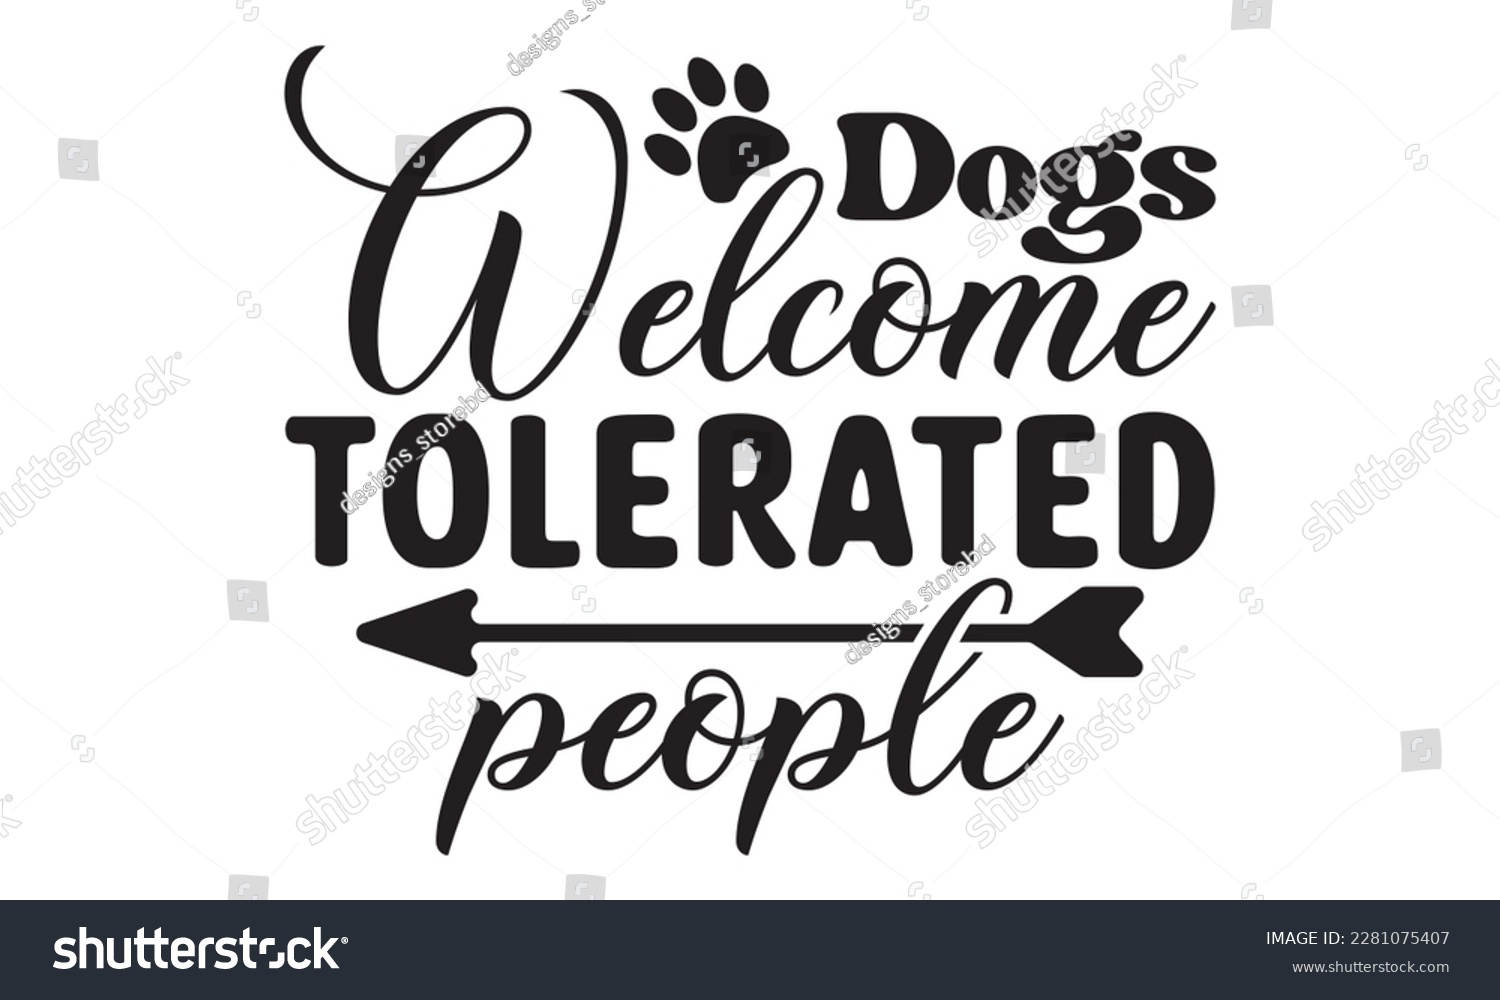 SVG of Dogs welcome people tolerated svg ,dog SVG Bundle, dog SVG design bundle and  t-shirt design, Funny Dog Quotes SVG Designs and cut files, fur mom, animal design, animal lover svg